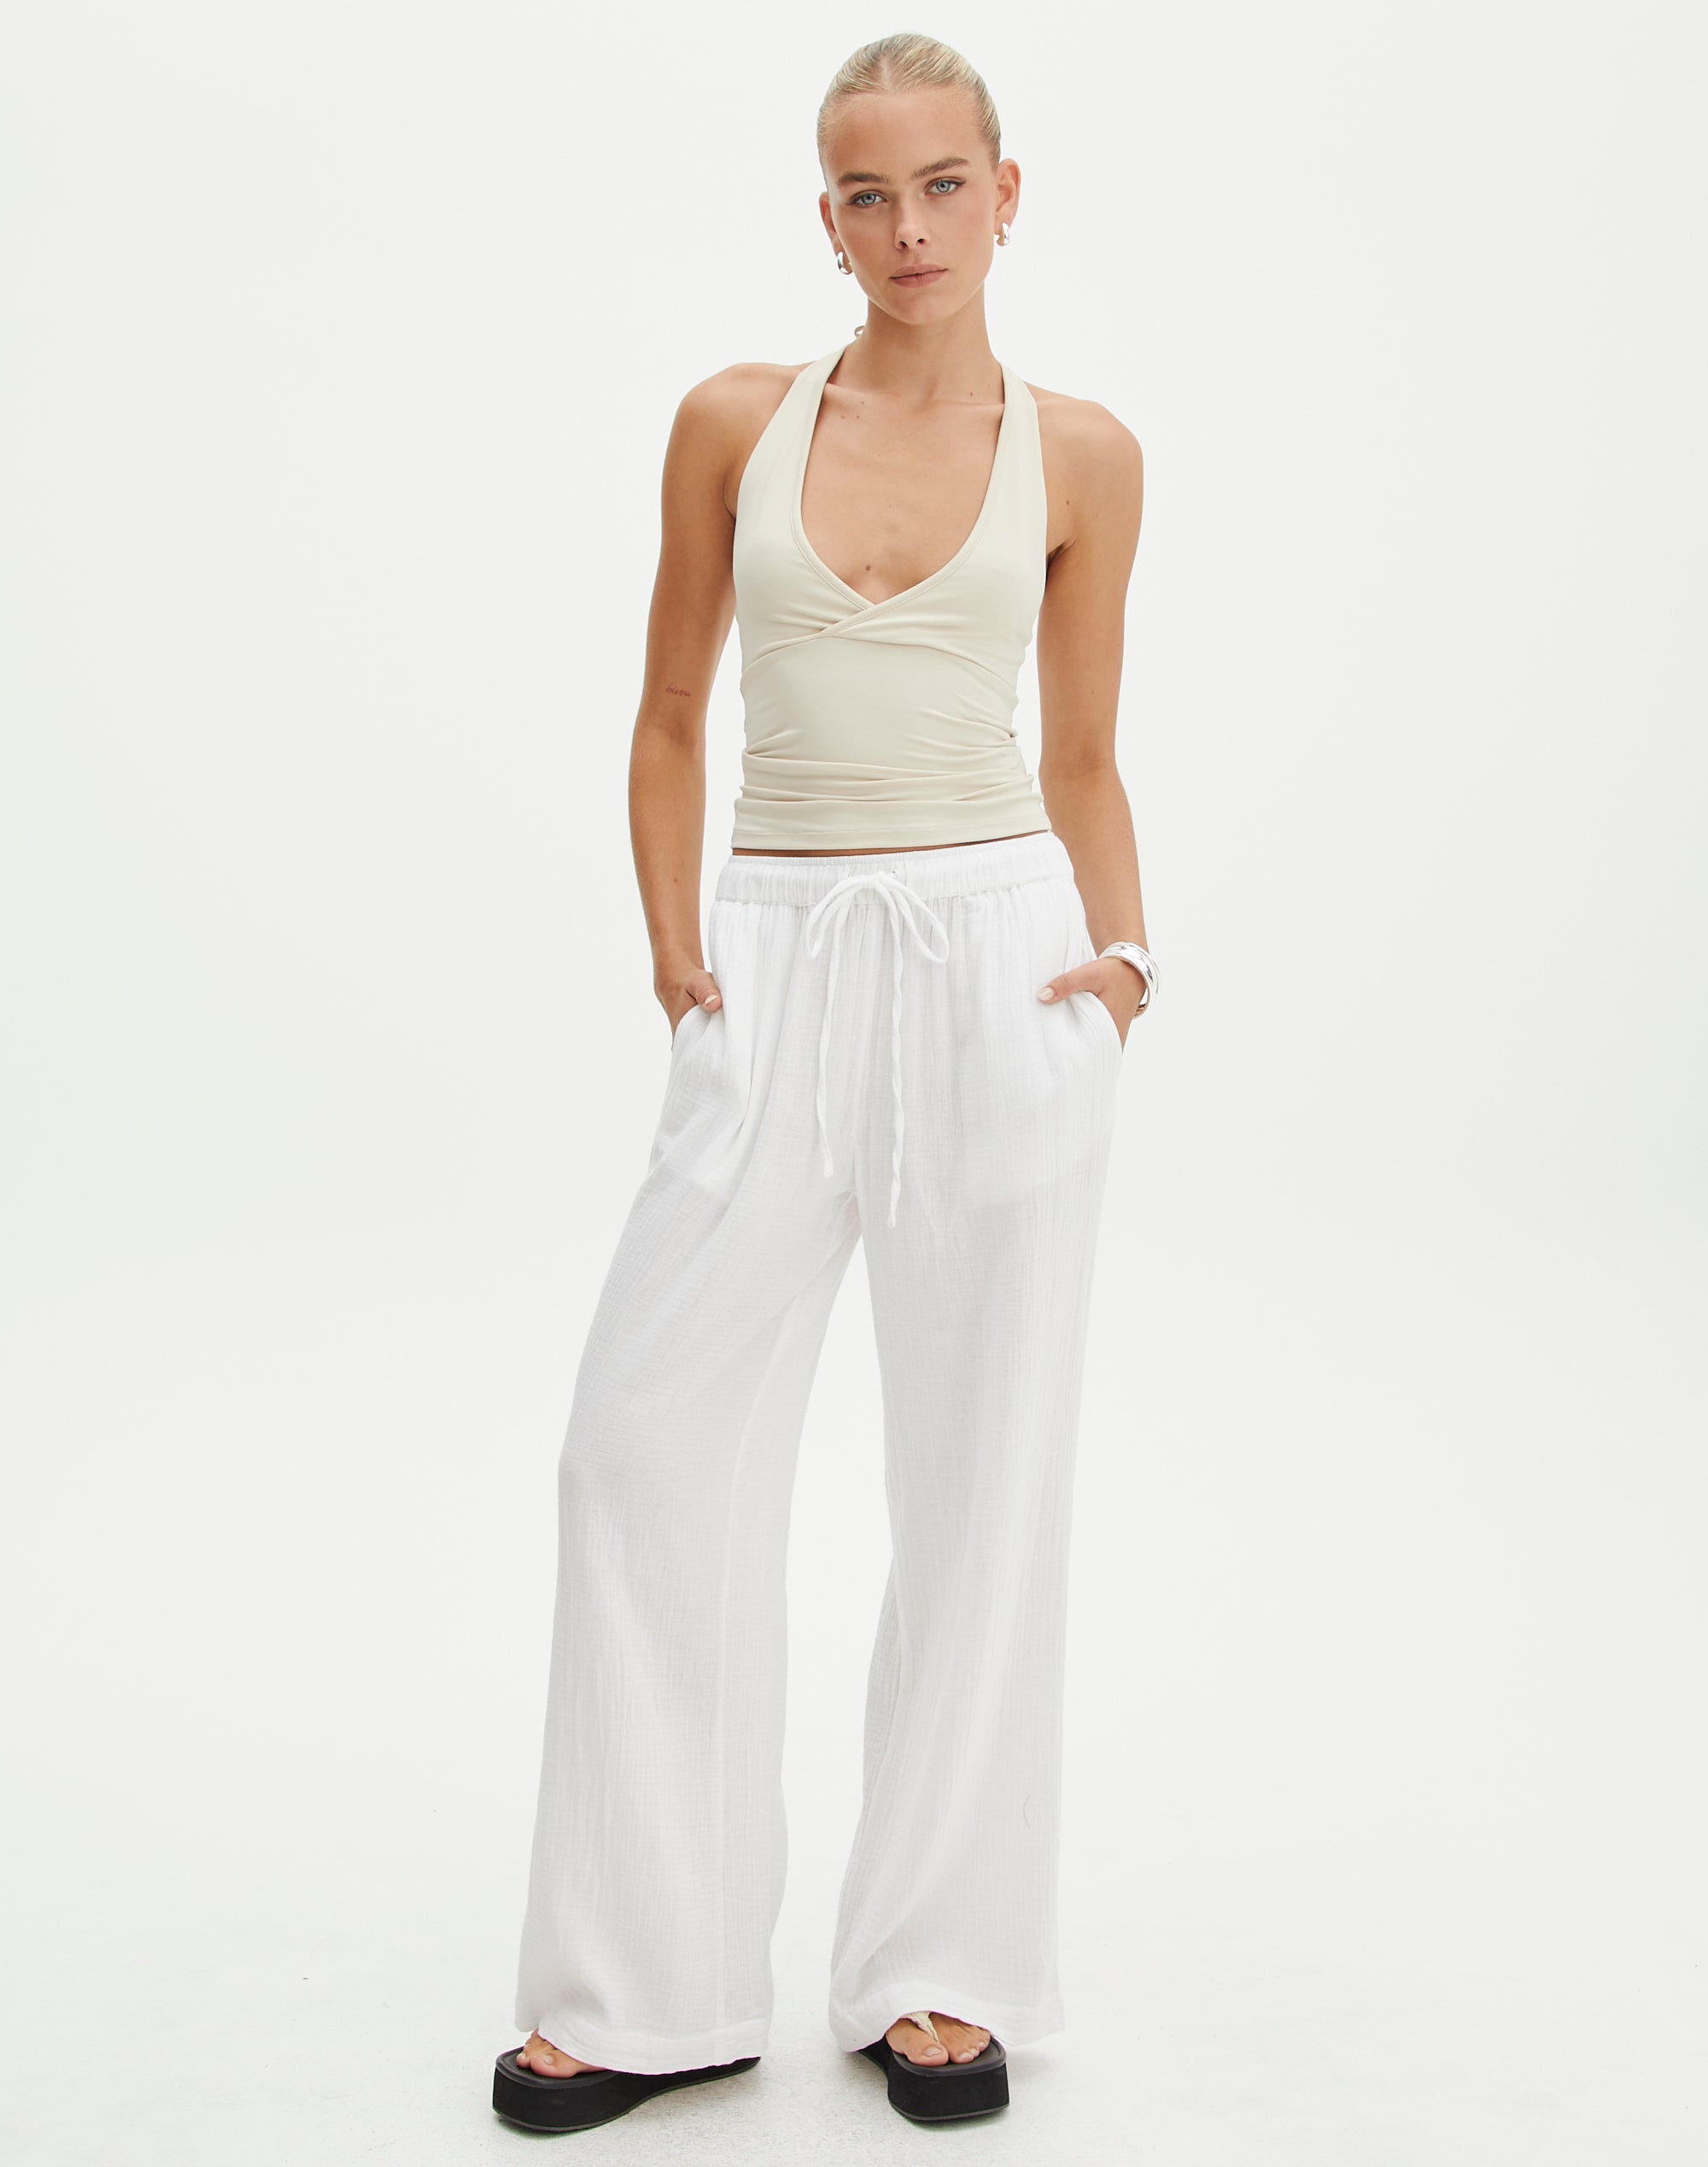 White wide-leg pants | HOWTOWEAR Fashion